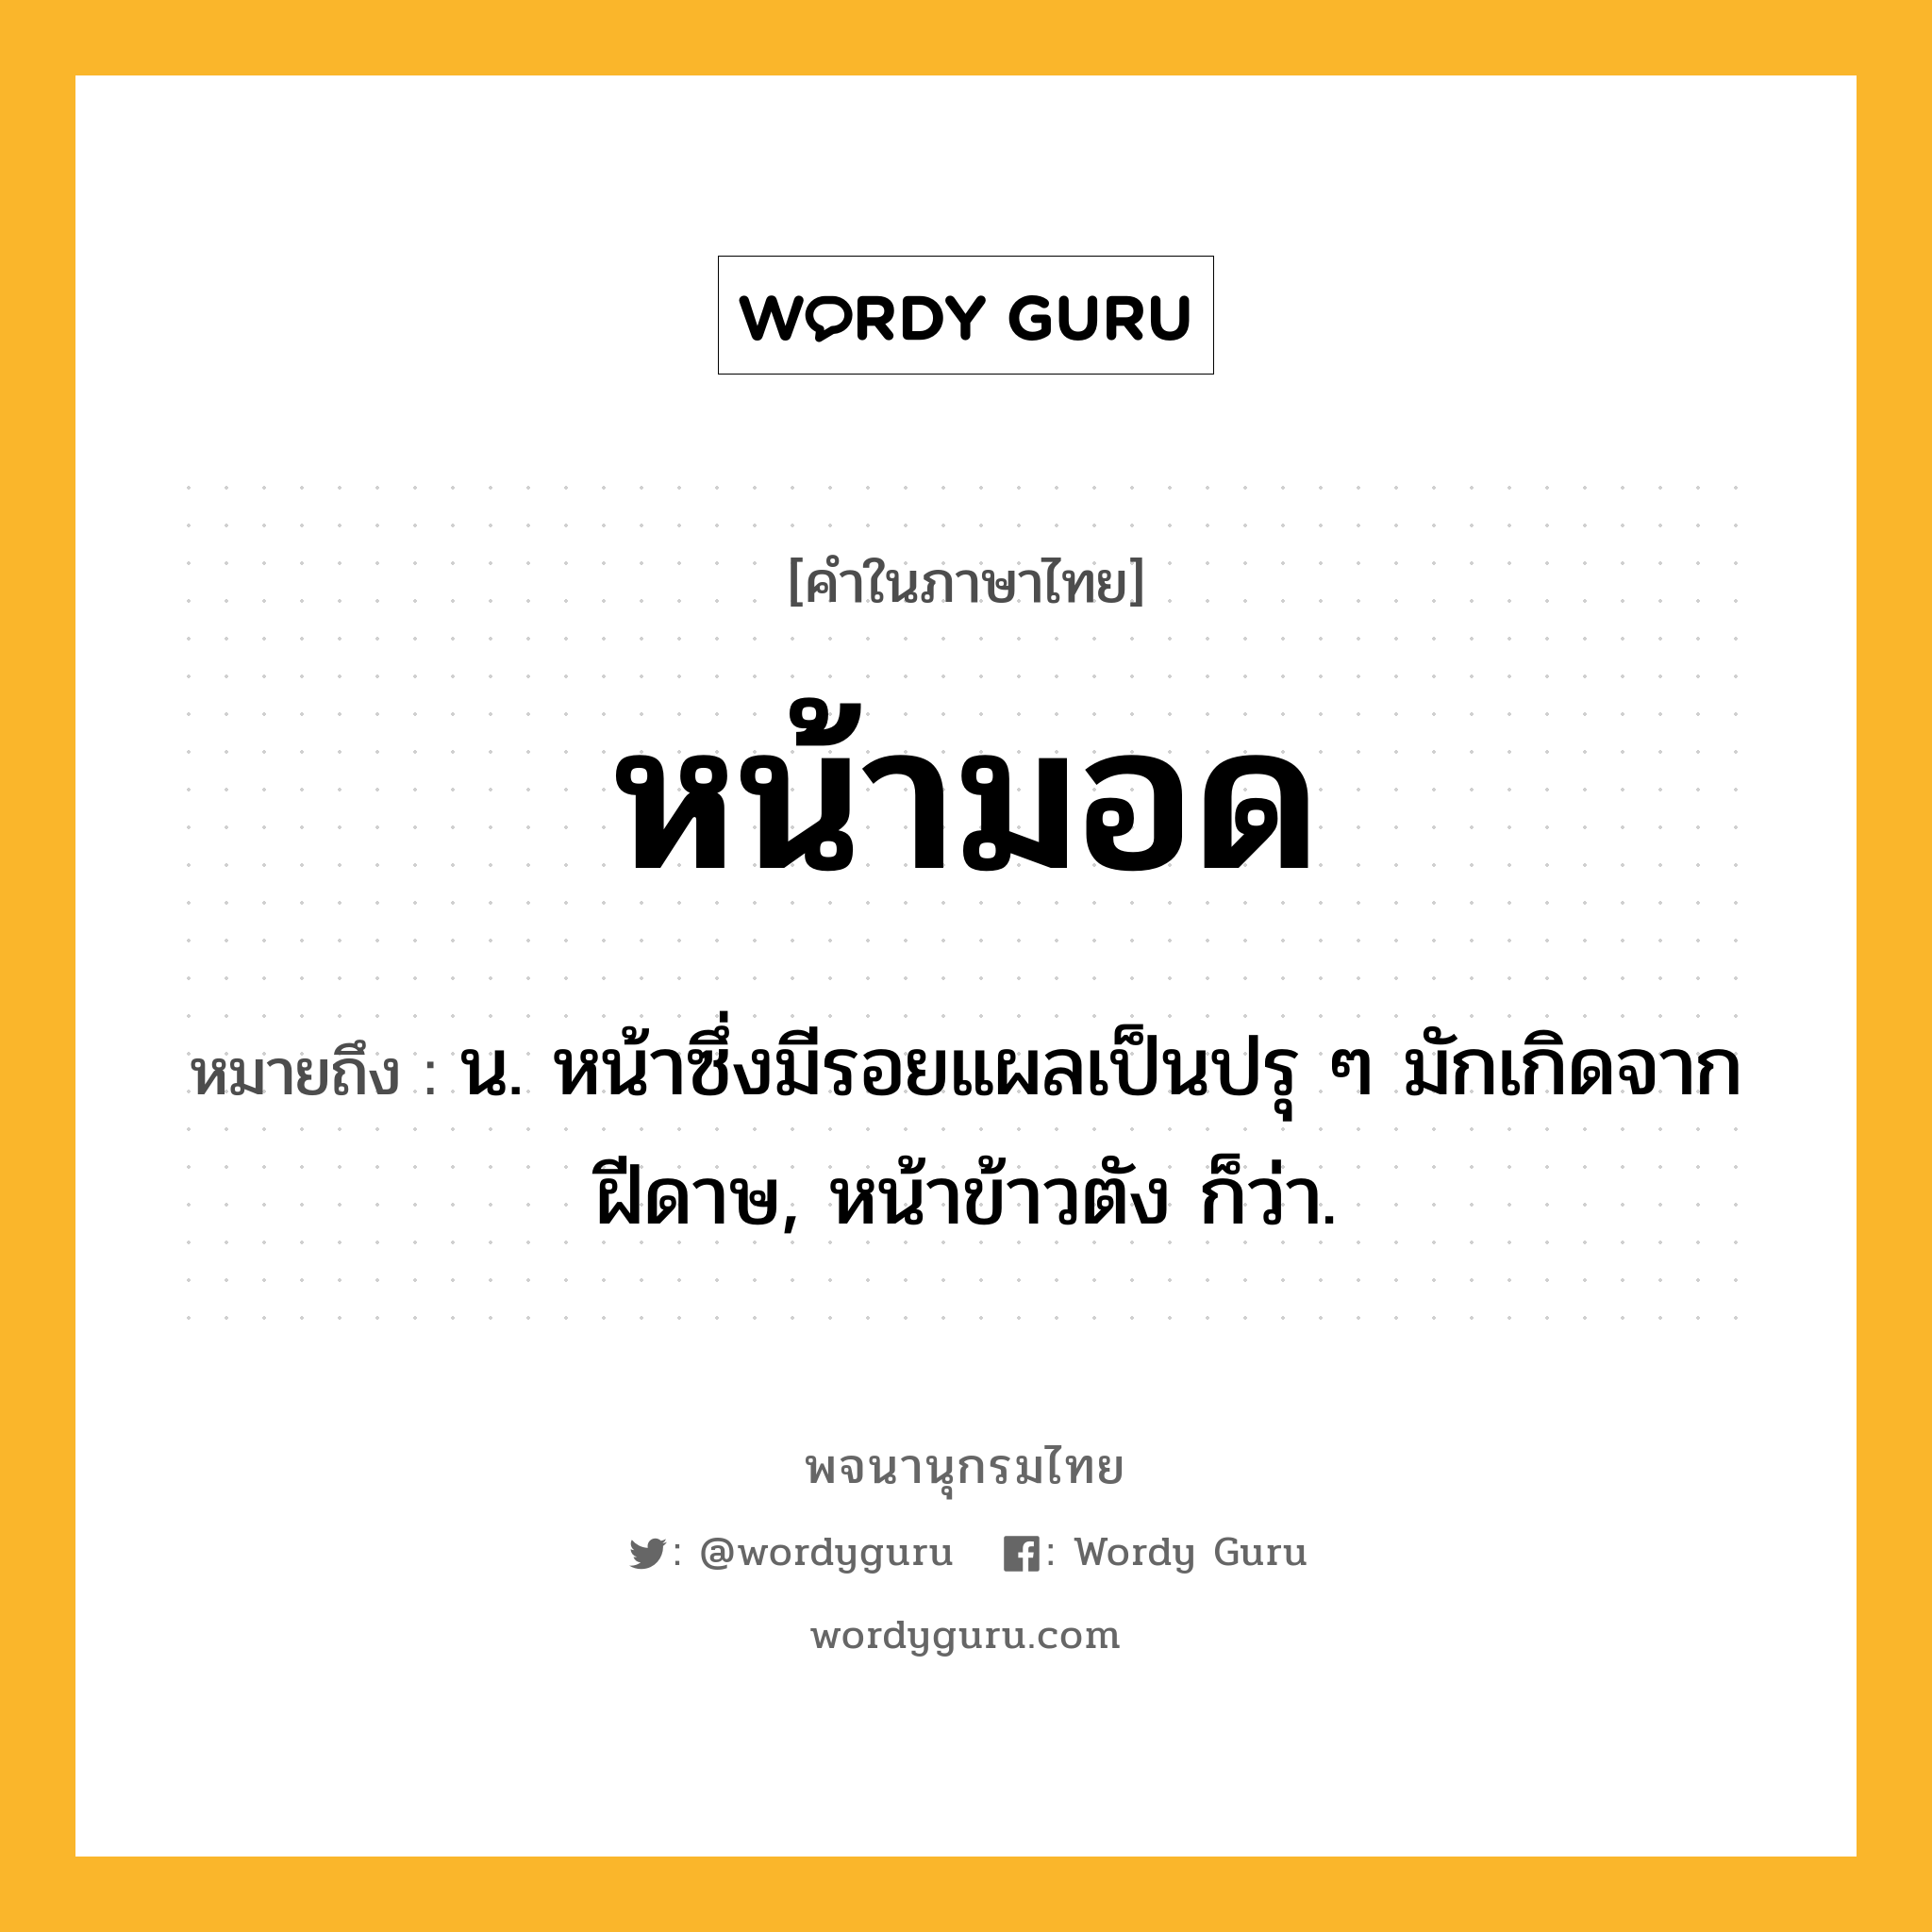 หน้ามอด ความหมาย หมายถึงอะไร?, คำในภาษาไทย หน้ามอด หมายถึง น. หน้าซึ่งมีรอยแผลเป็นปรุ ๆ มักเกิดจากฝีดาษ, หน้าข้าวตัง ก็ว่า.